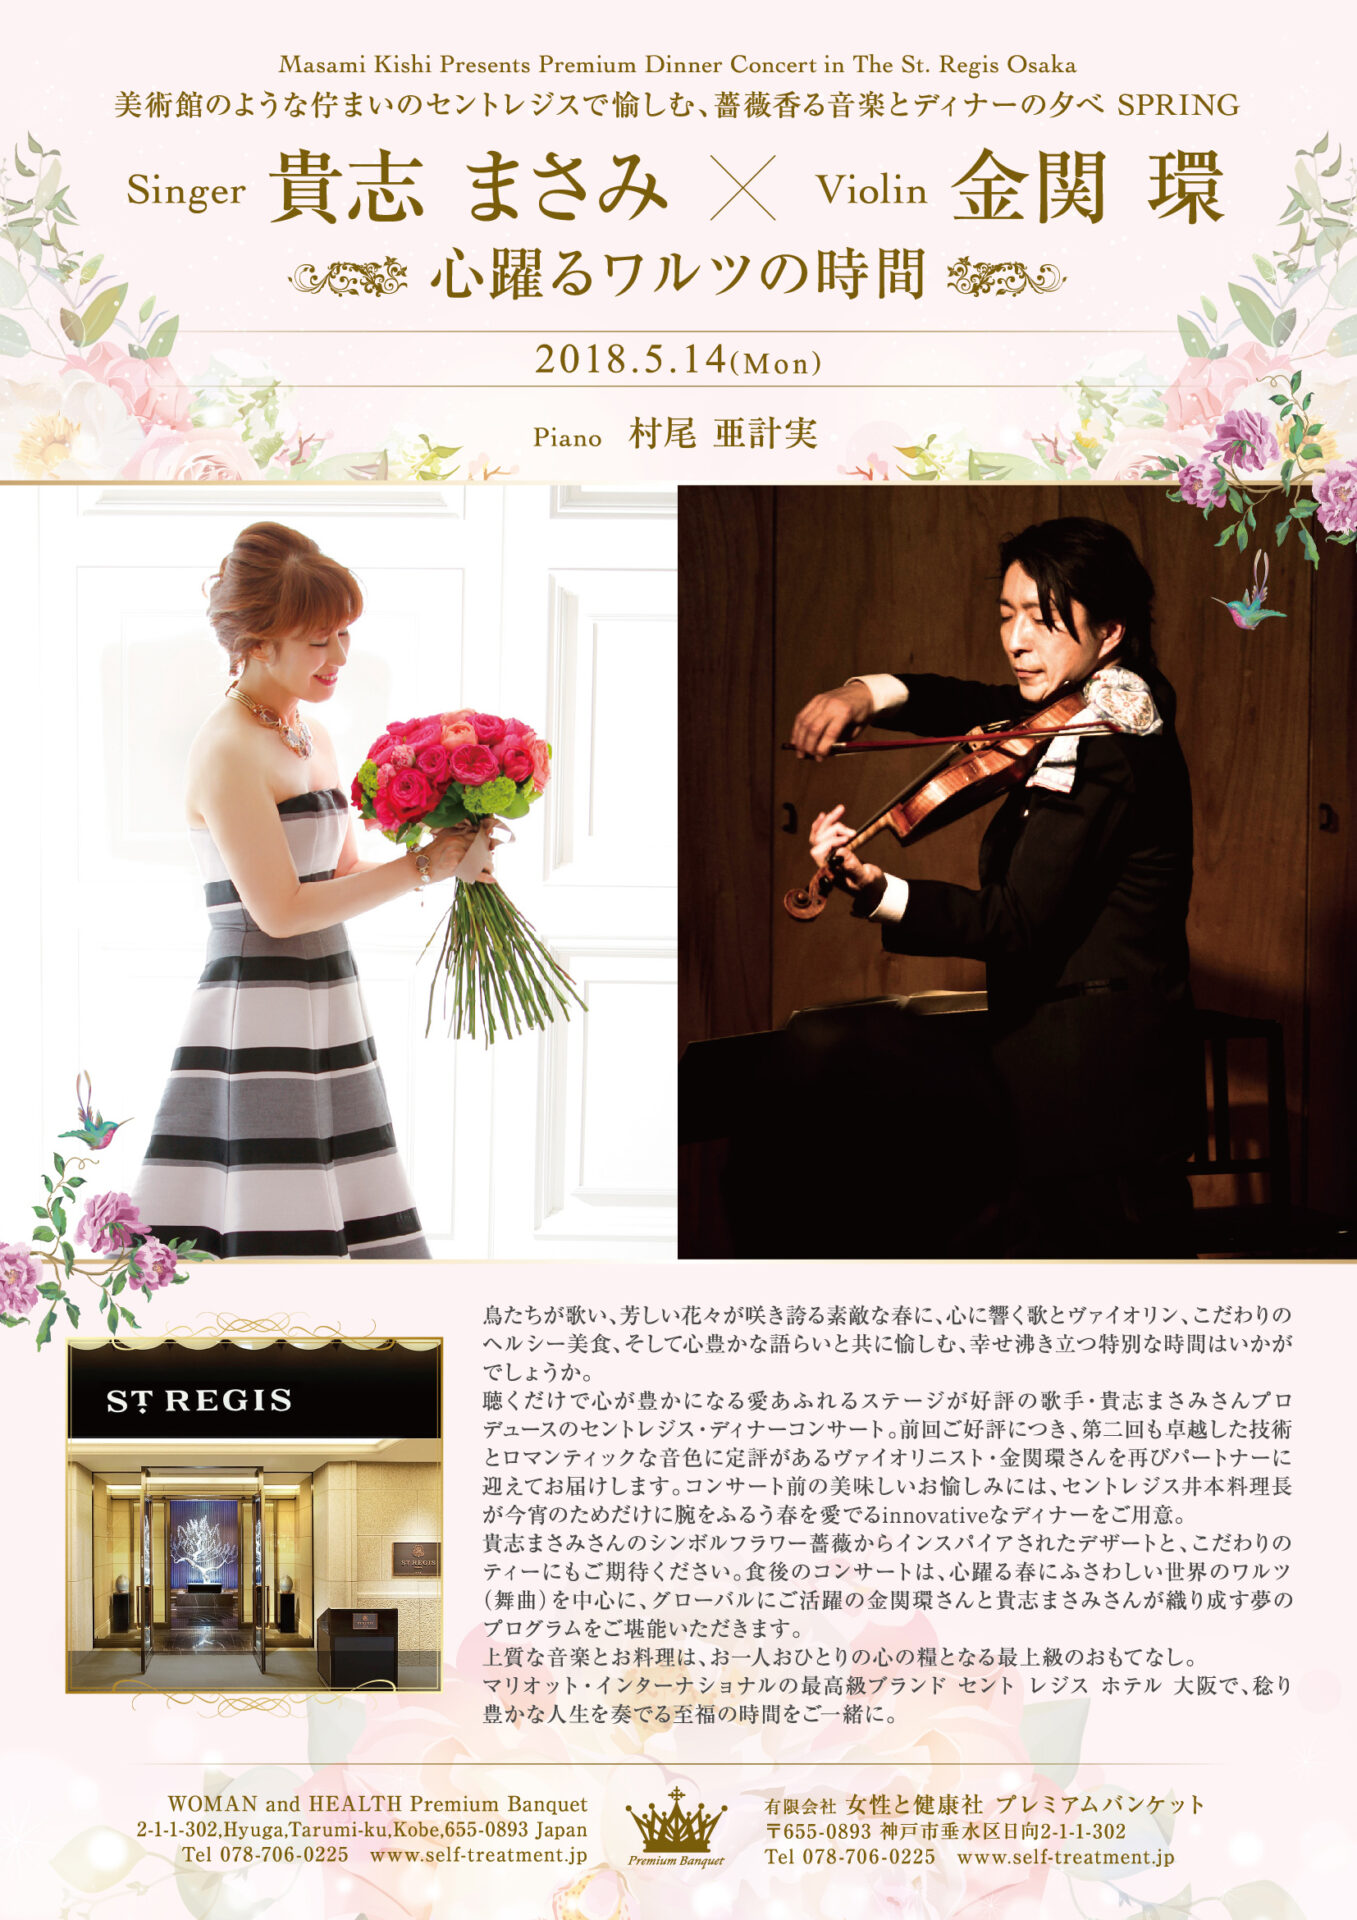 Featured image for “Premium Dinner Concert in The St. Regis Osaka 美術館のような佇まいのセントレジスで愉しむ、薔薇香る音楽とディナーの夕べ 心躍るワルツの時間”